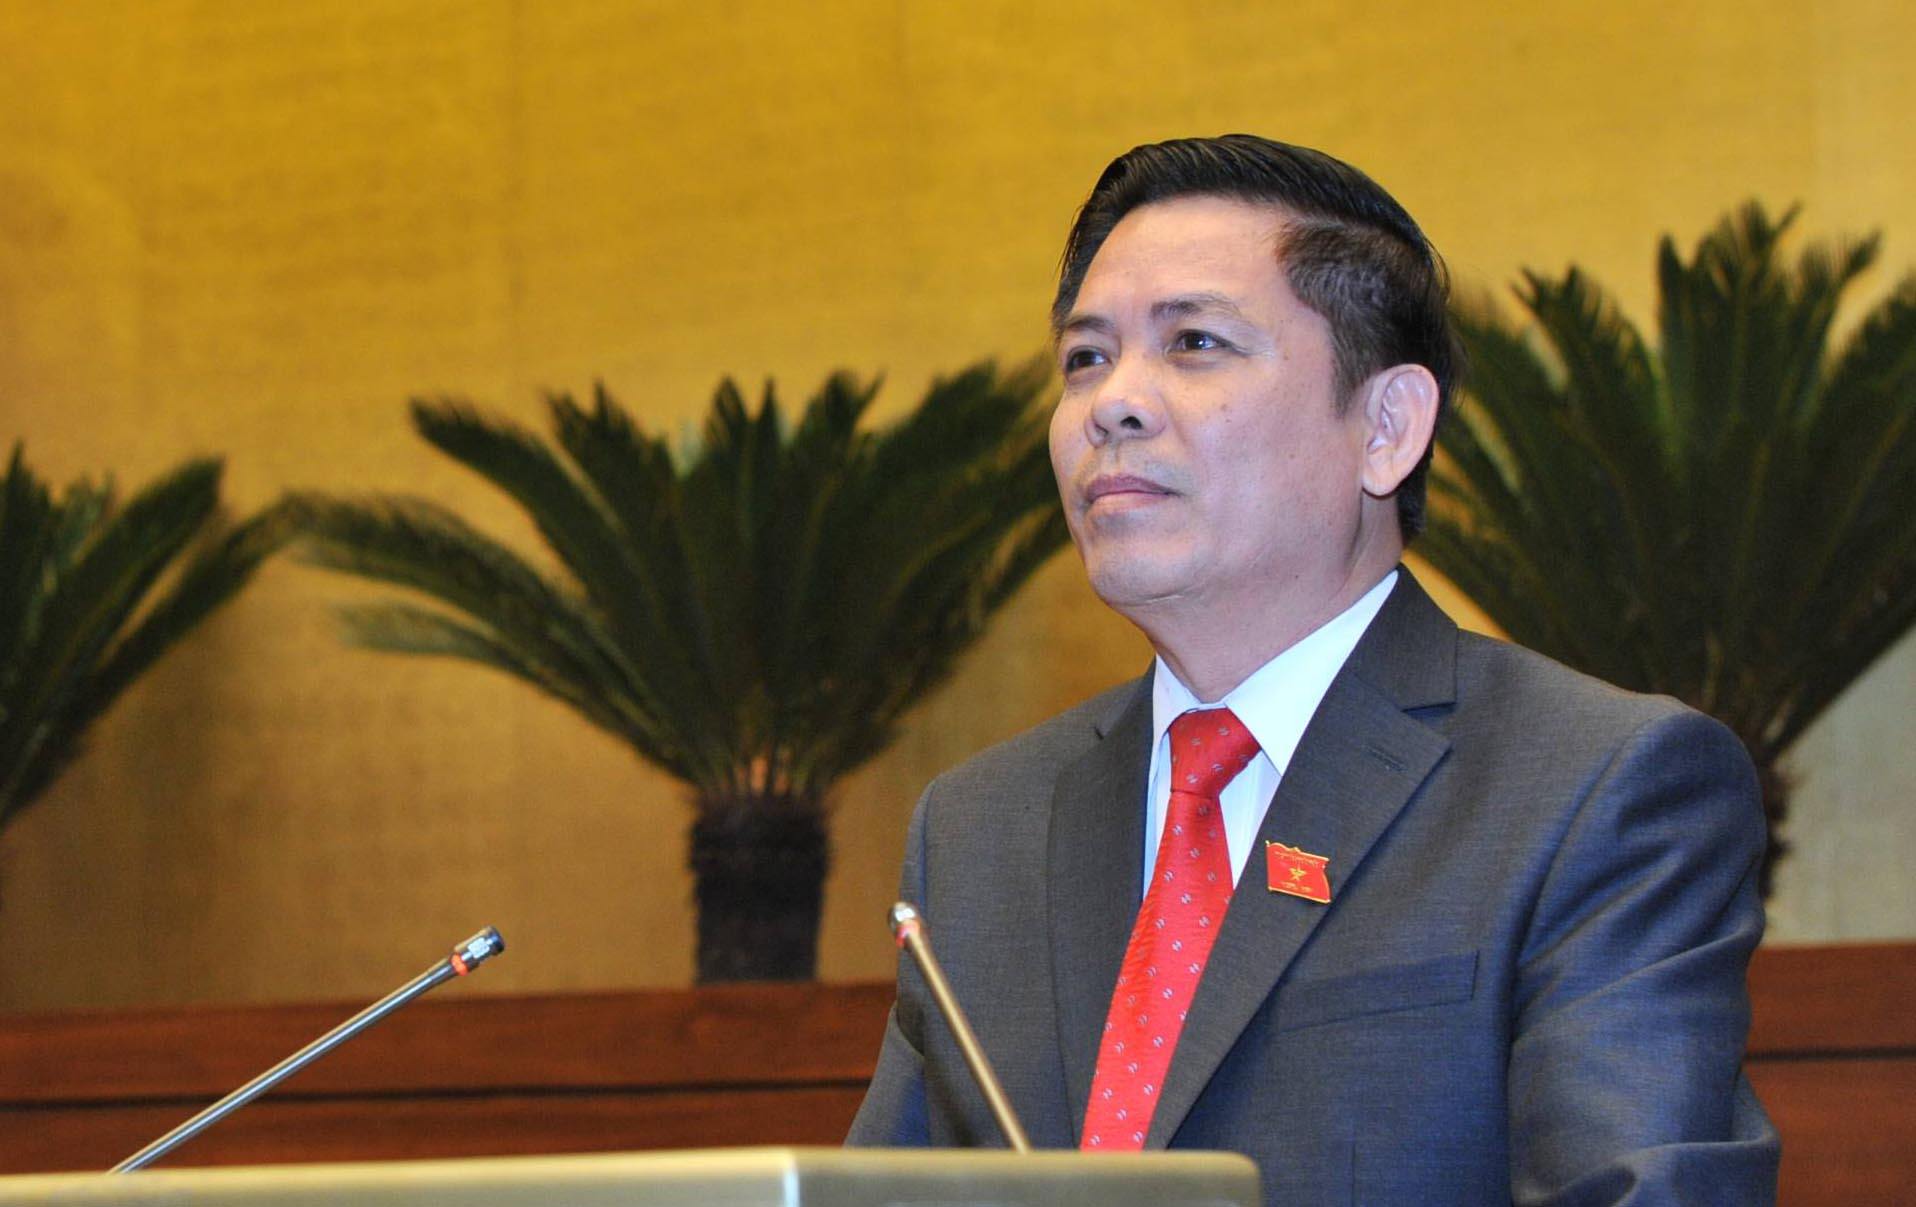 Bộ trưởng Bộ GTVT Nguyễn Văn Thể trả lời chất vấn